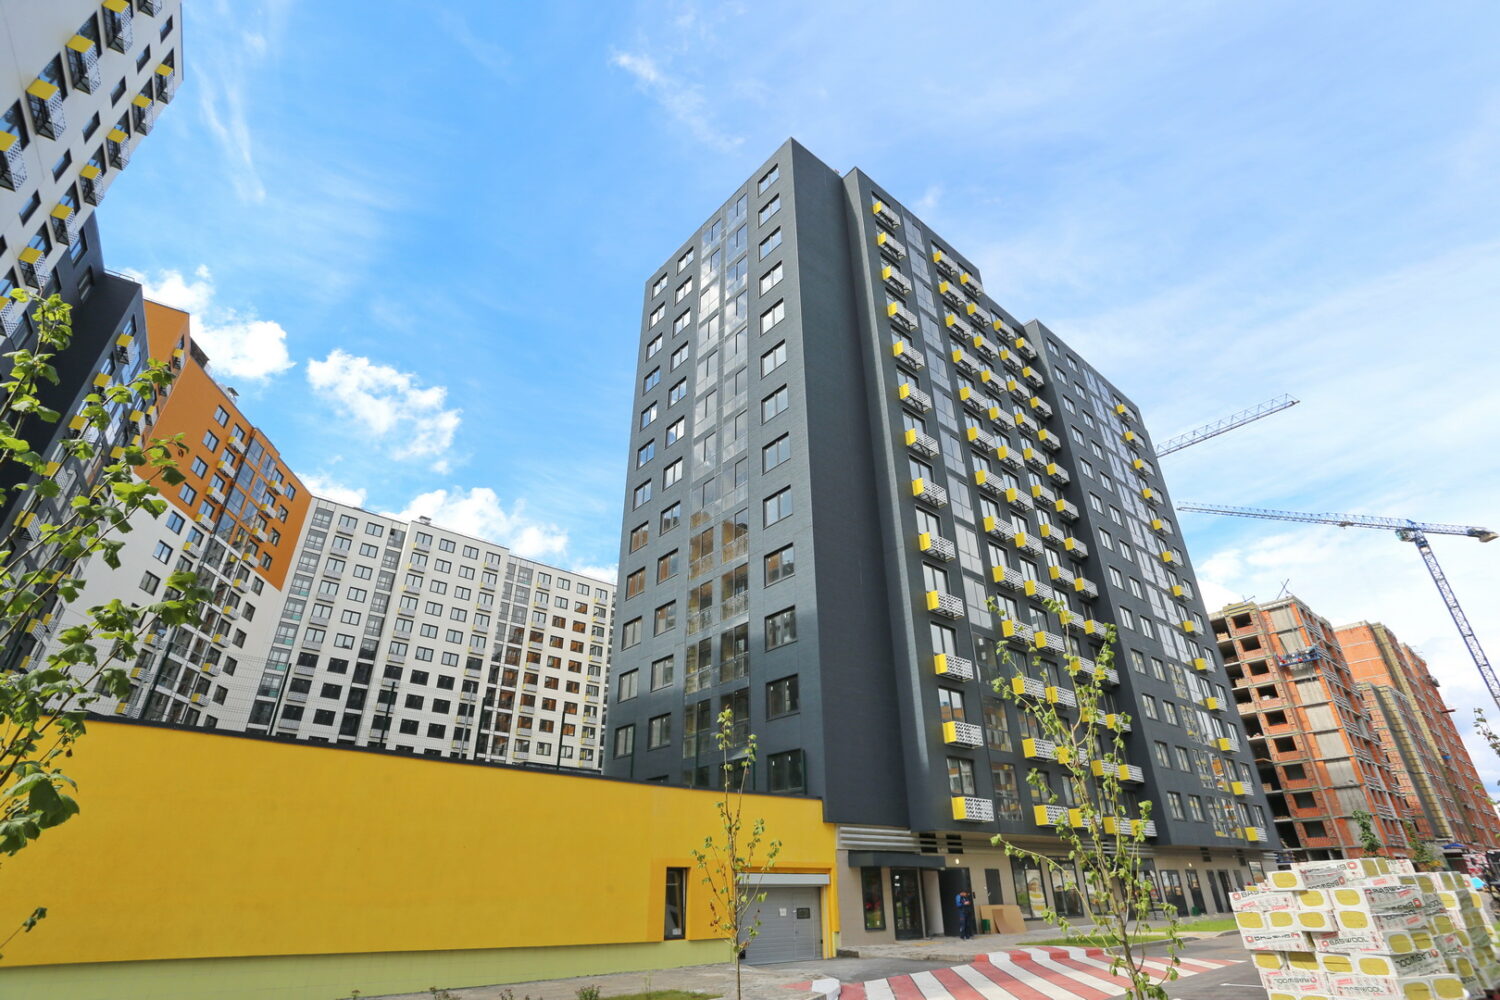 Сбербанк профинансирует строительство нового жилищного комплекса в Подмосковье